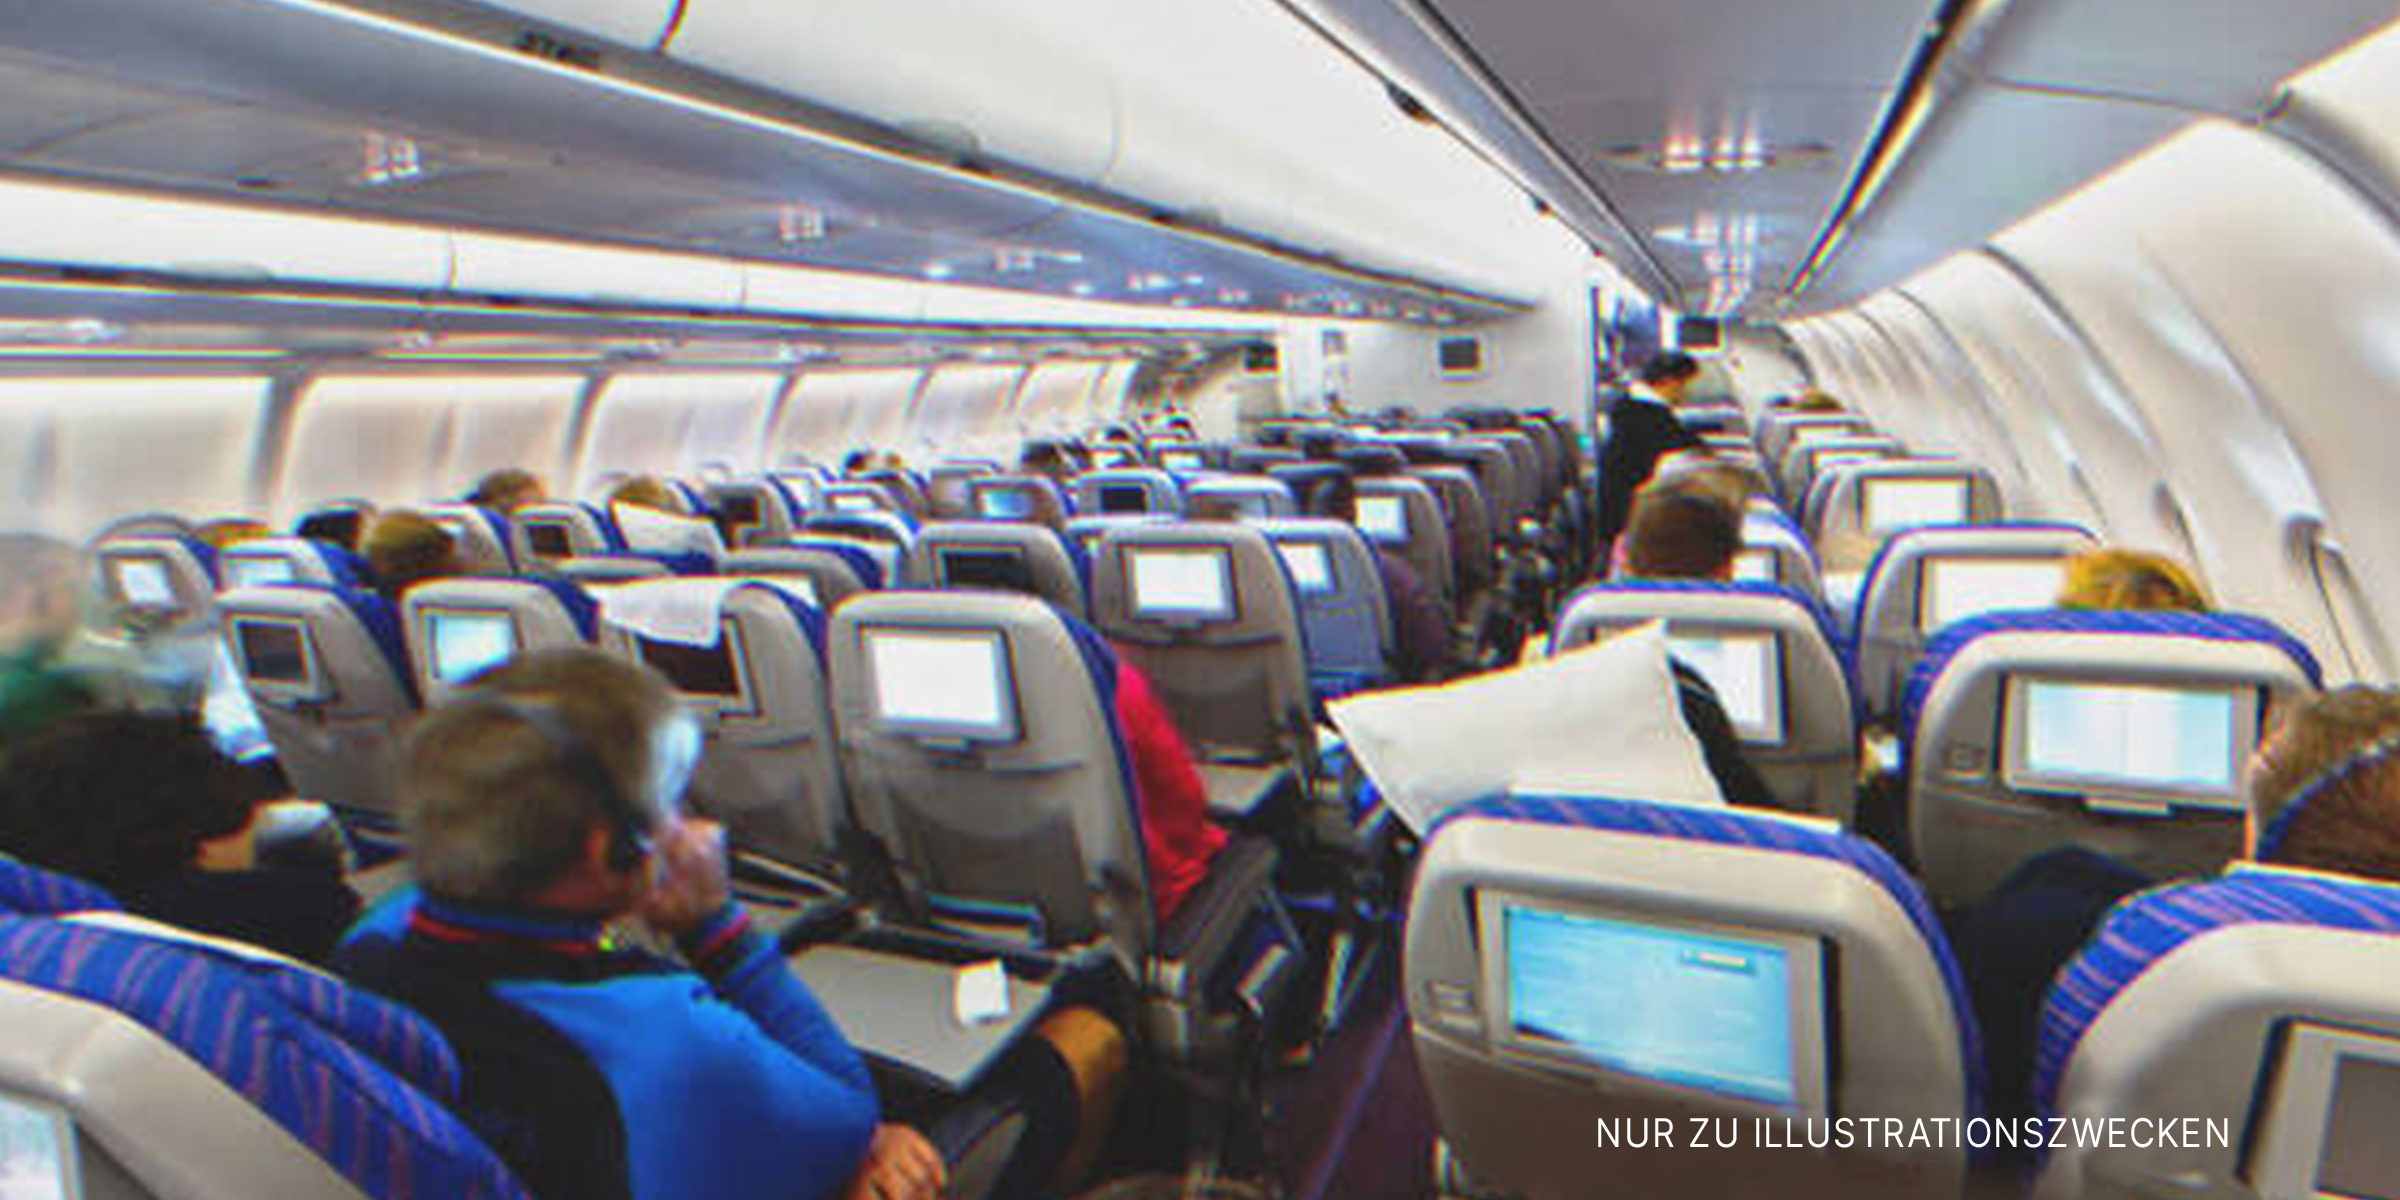 Passagiere sitzen im Flugzeug | Quelle: Shutterstock